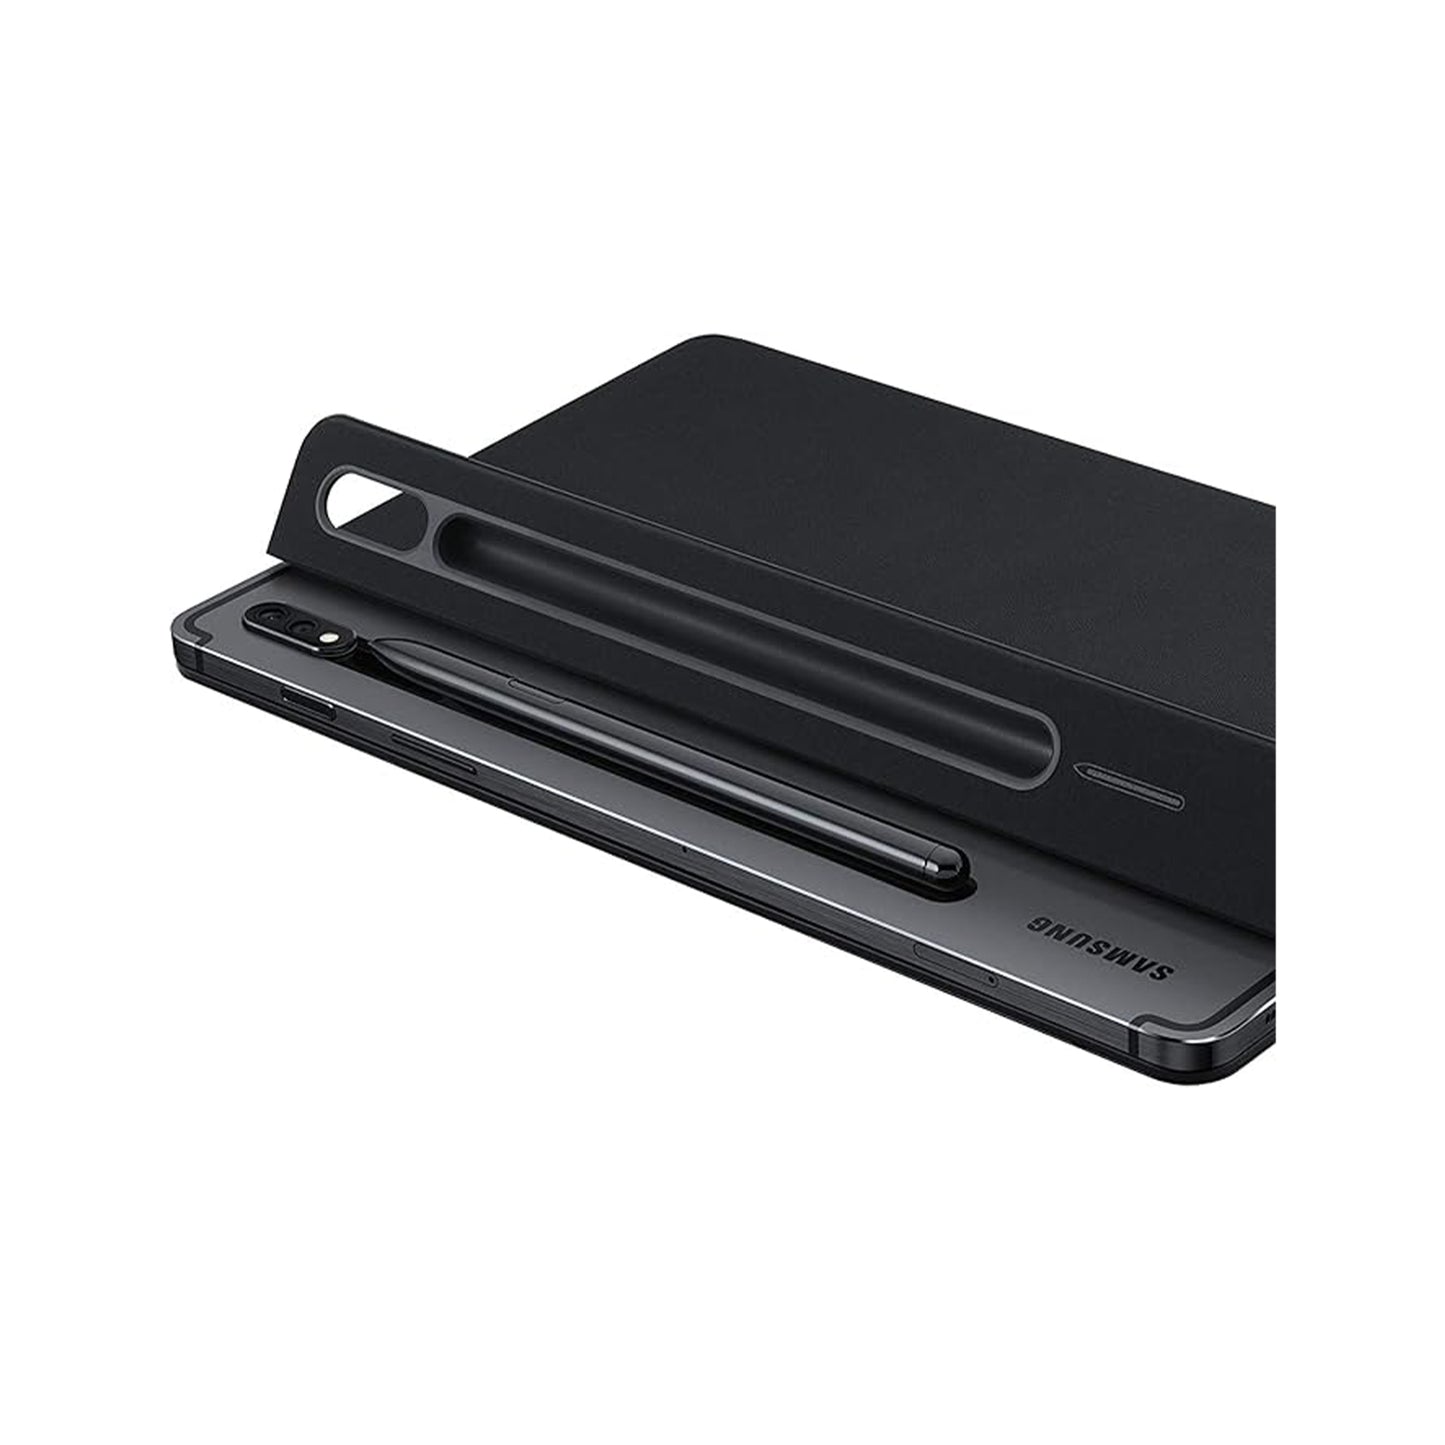 سامسونج جالاكسي تاب S7 وS7 5G لوحة مفاتيح بغطاء كتاب، EF-DT870UBEGUJ، أسود 